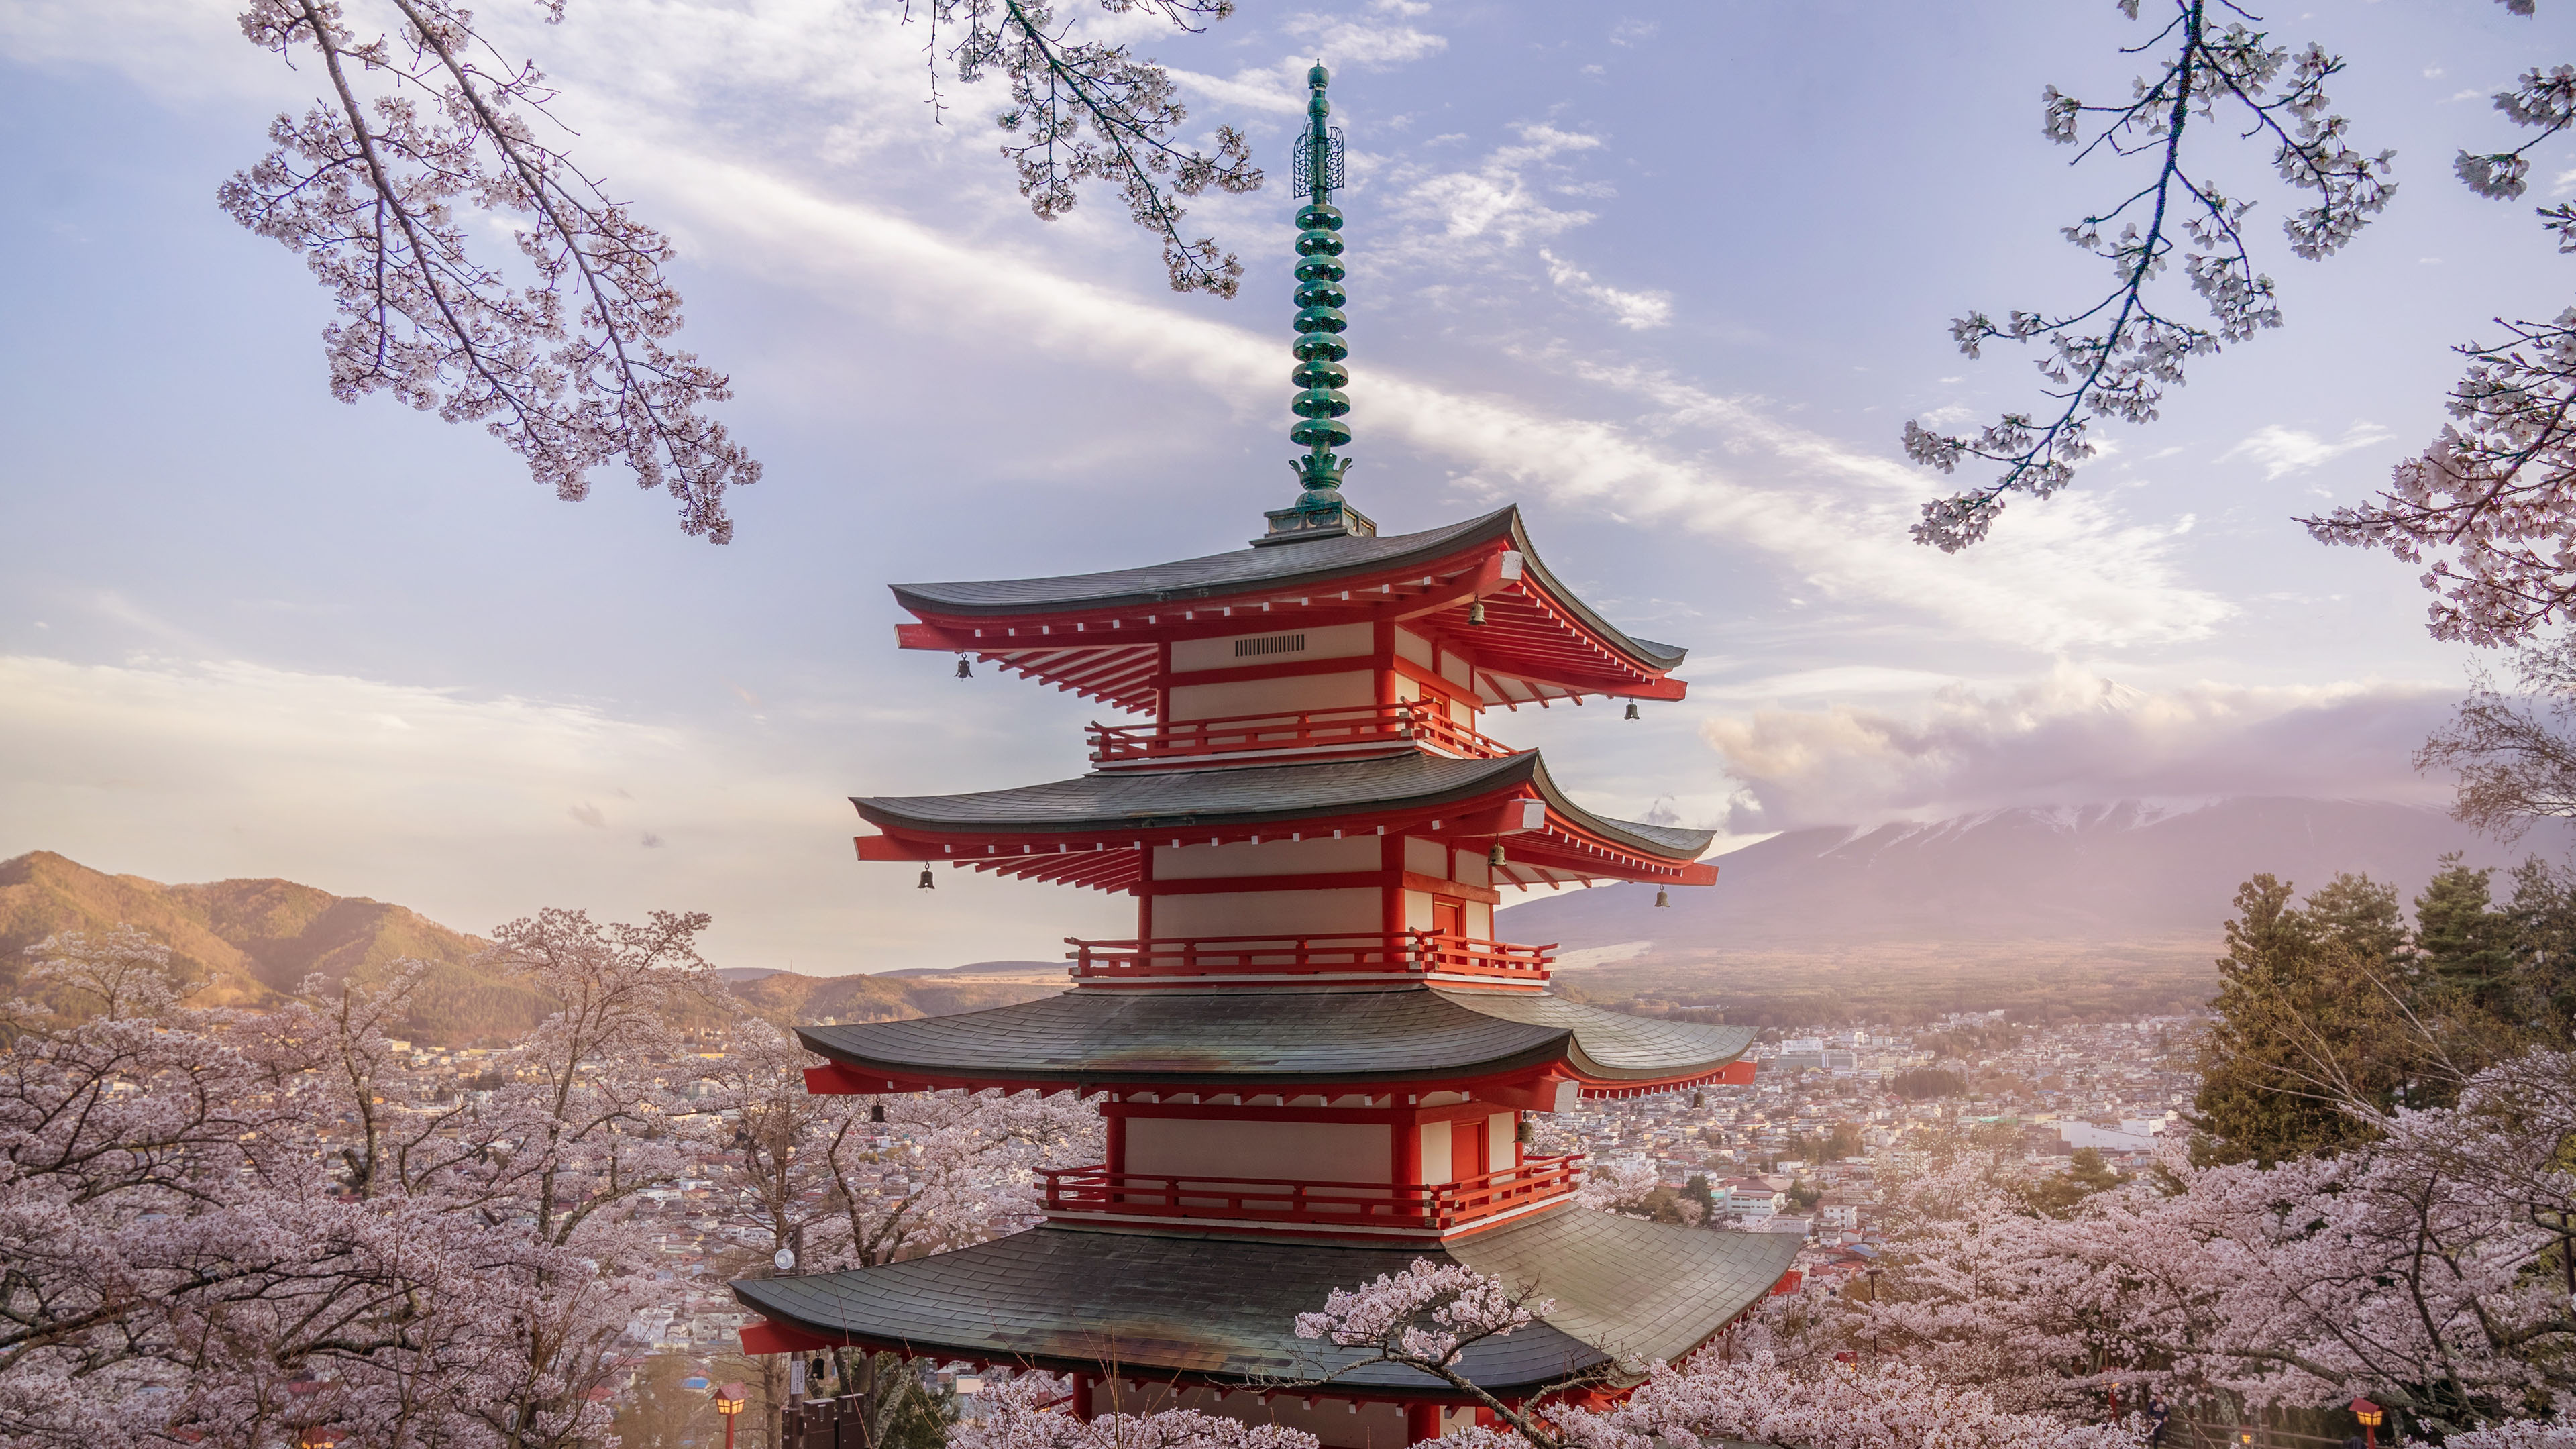 风景大片,春意盎然,塔楼,樱花,日本